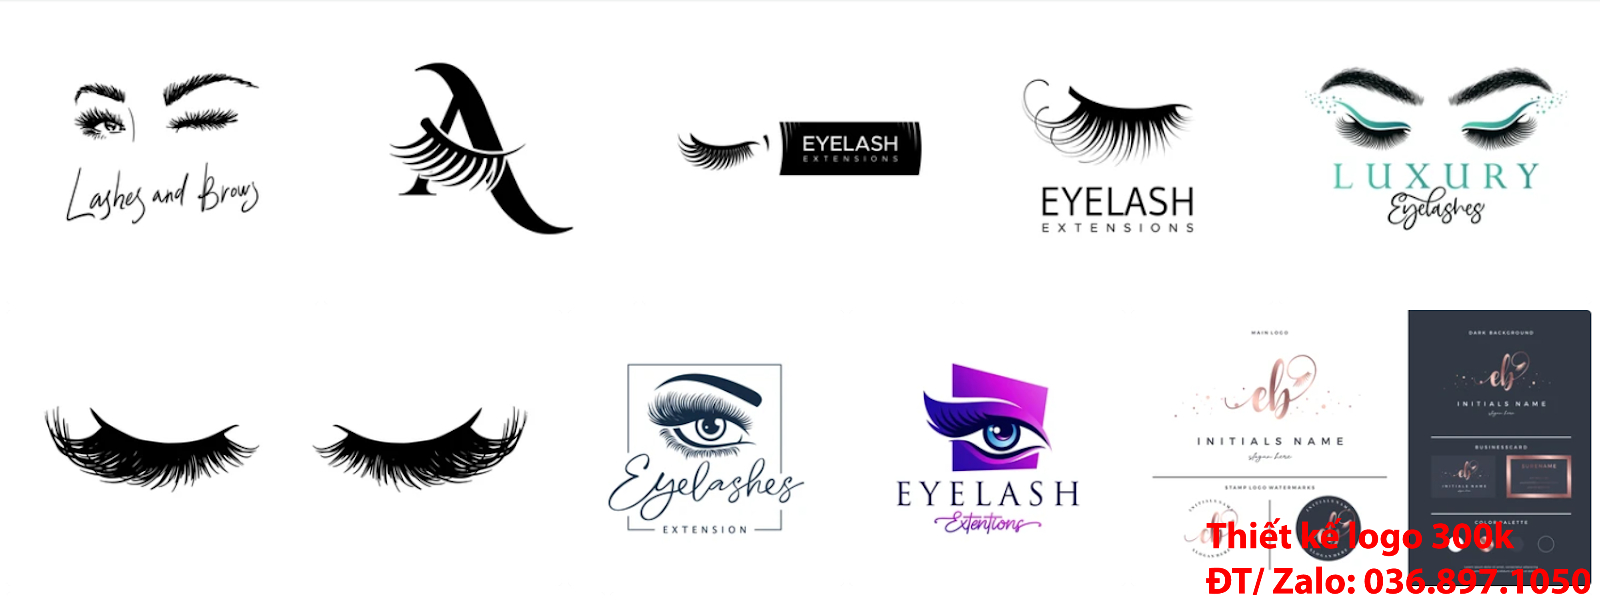 Tại Hà Nội cũng có công ty nhận thiết kế các thiết kế logo thẩm mỹ lông mi mắt đẹp online uy tín chất lượng giá 300k